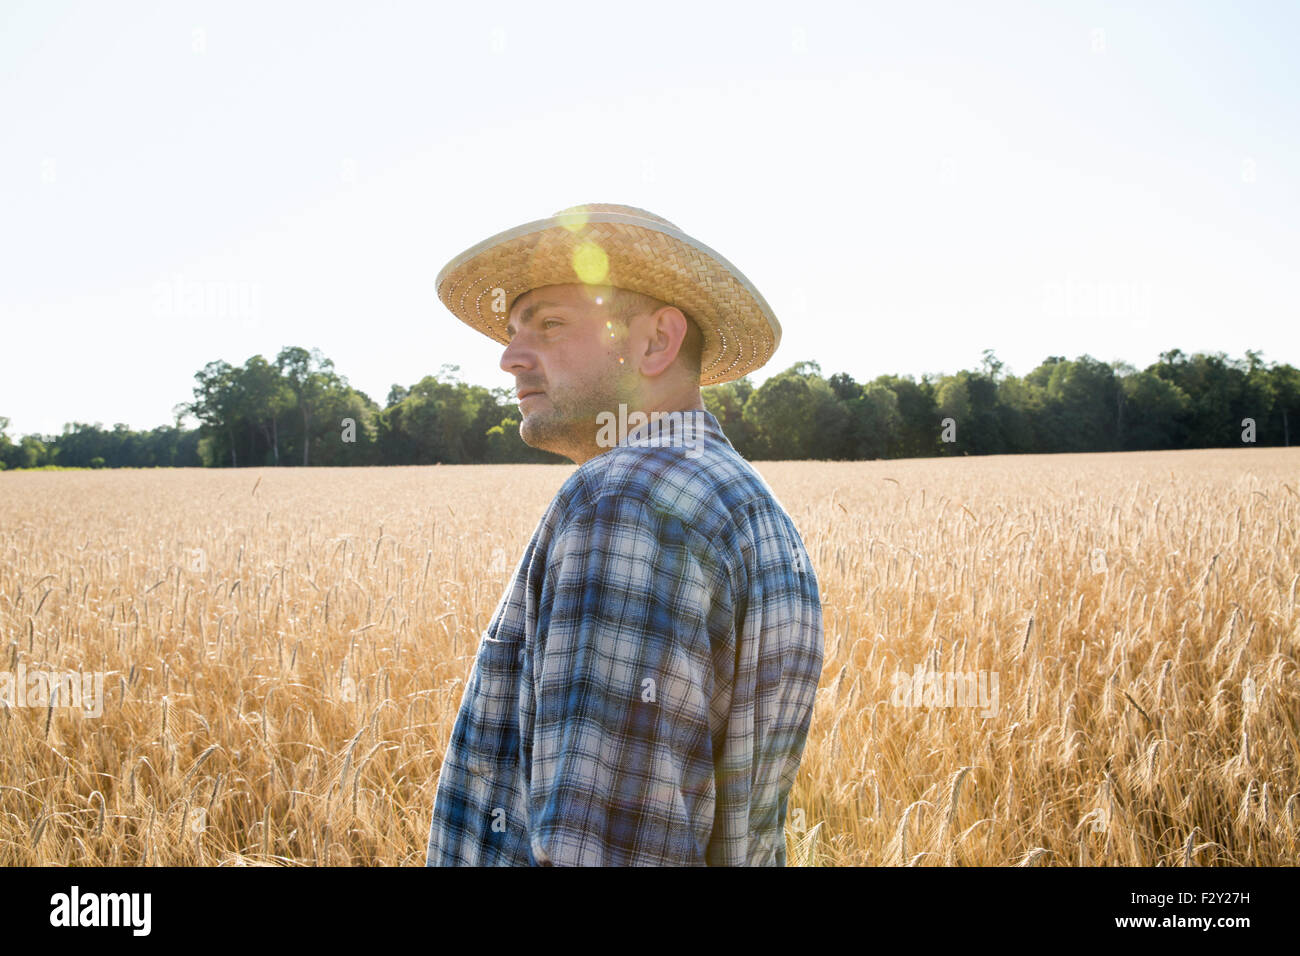 Mann trägt ein kariertes Hemd und Hut steht in einem Maisfeld, ein Bauer. Stockfoto